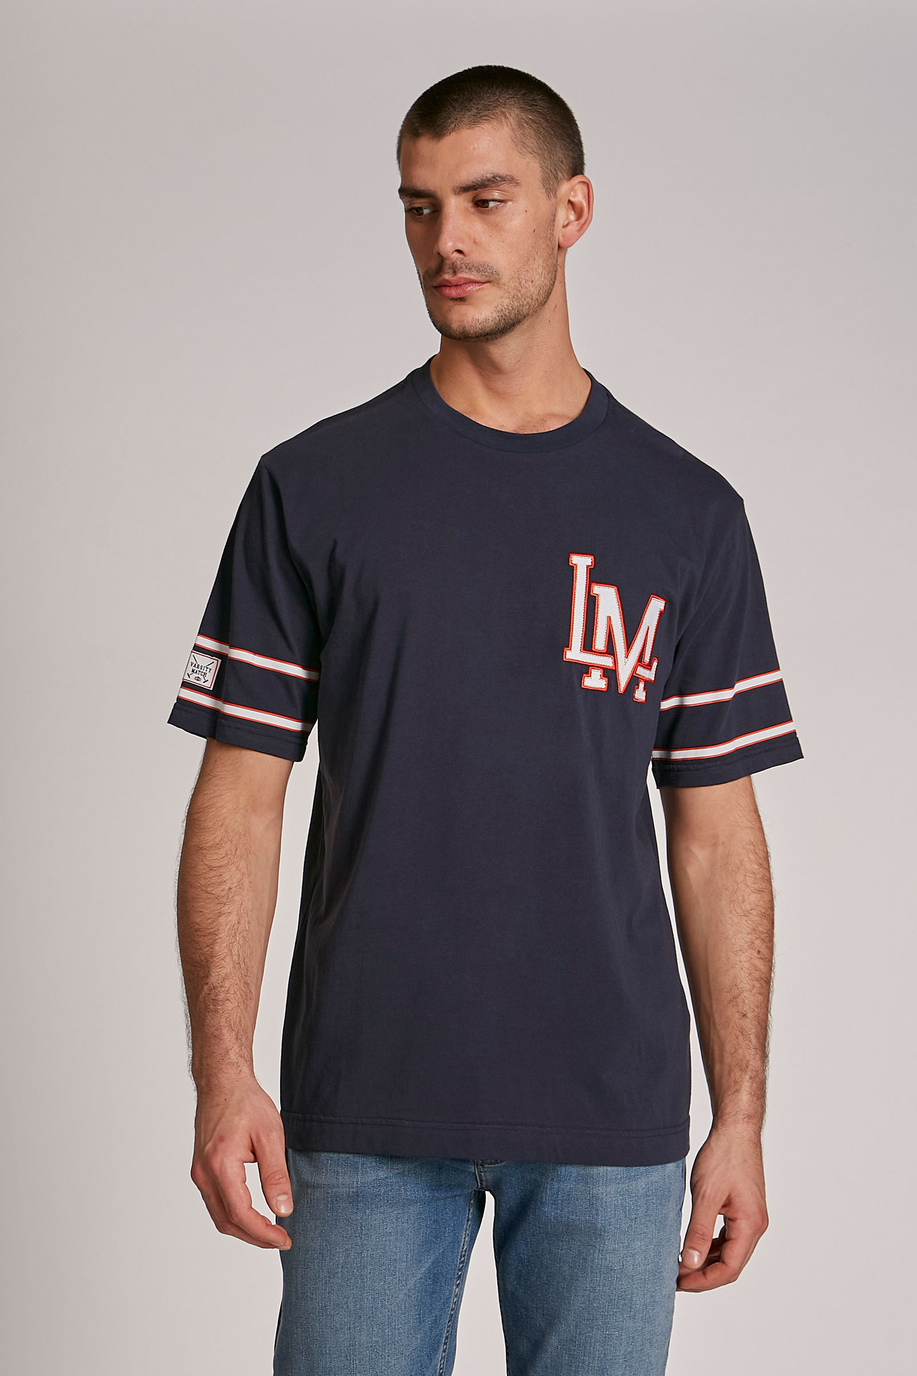 T-shirt homme en coton à manches courtes et coupe classique - T-Shirts | La Martina - Official Online Shop